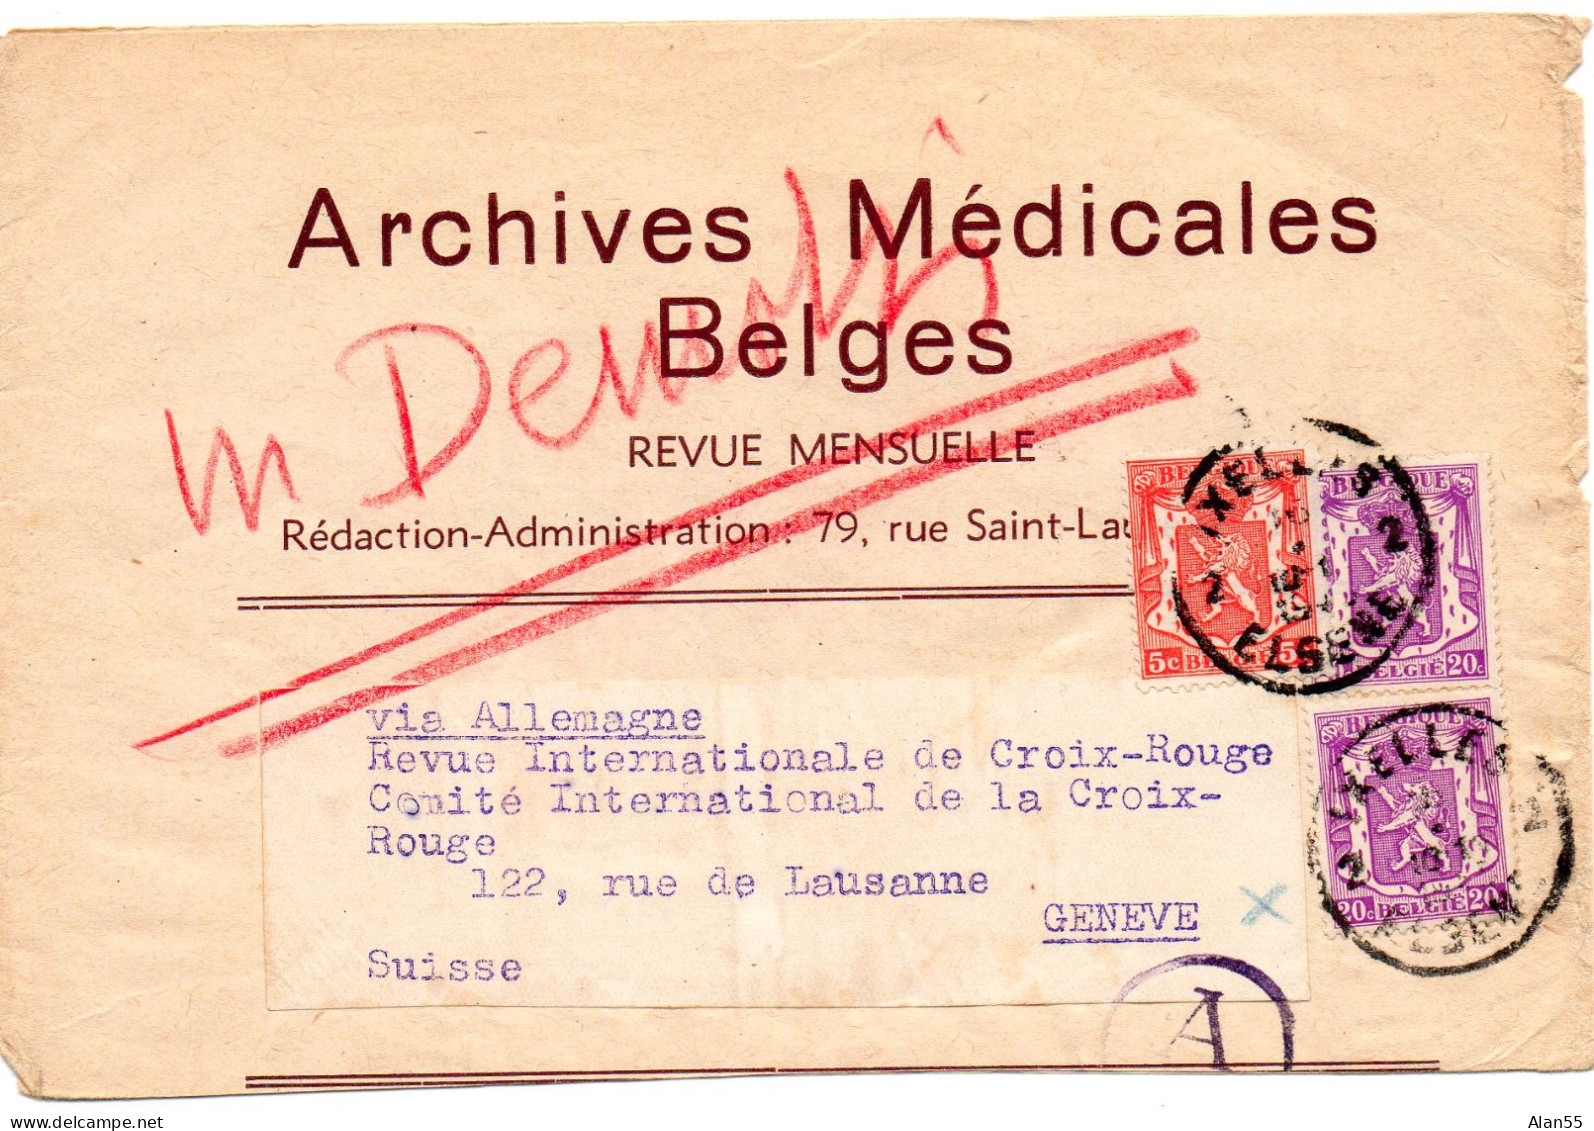 BELGIQUE.1941. "ARCHIVES MEDICALES BELGES". BANDE JOURNAL. CENSURE ALLEMANDE POUR LA SUISSE.Verso: Publicité. - Giornali [JO]